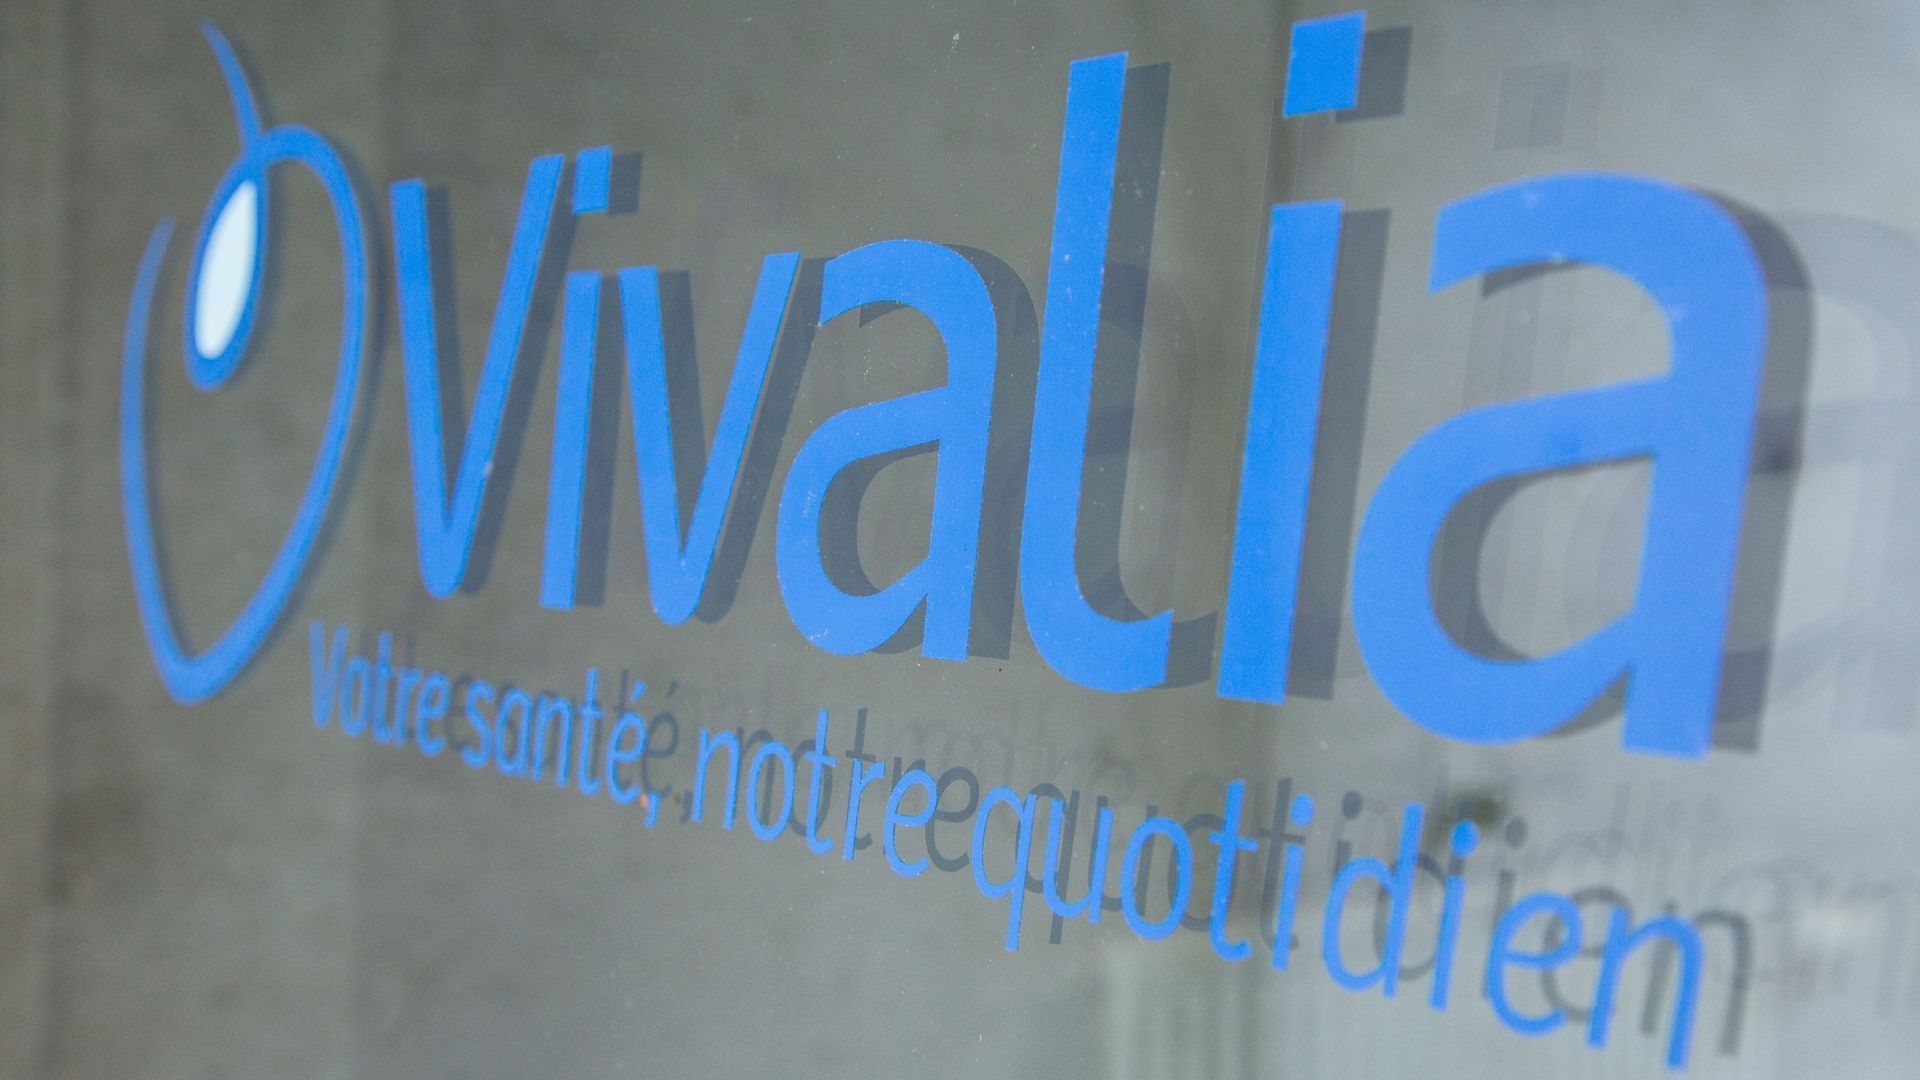 Logo Vivalia